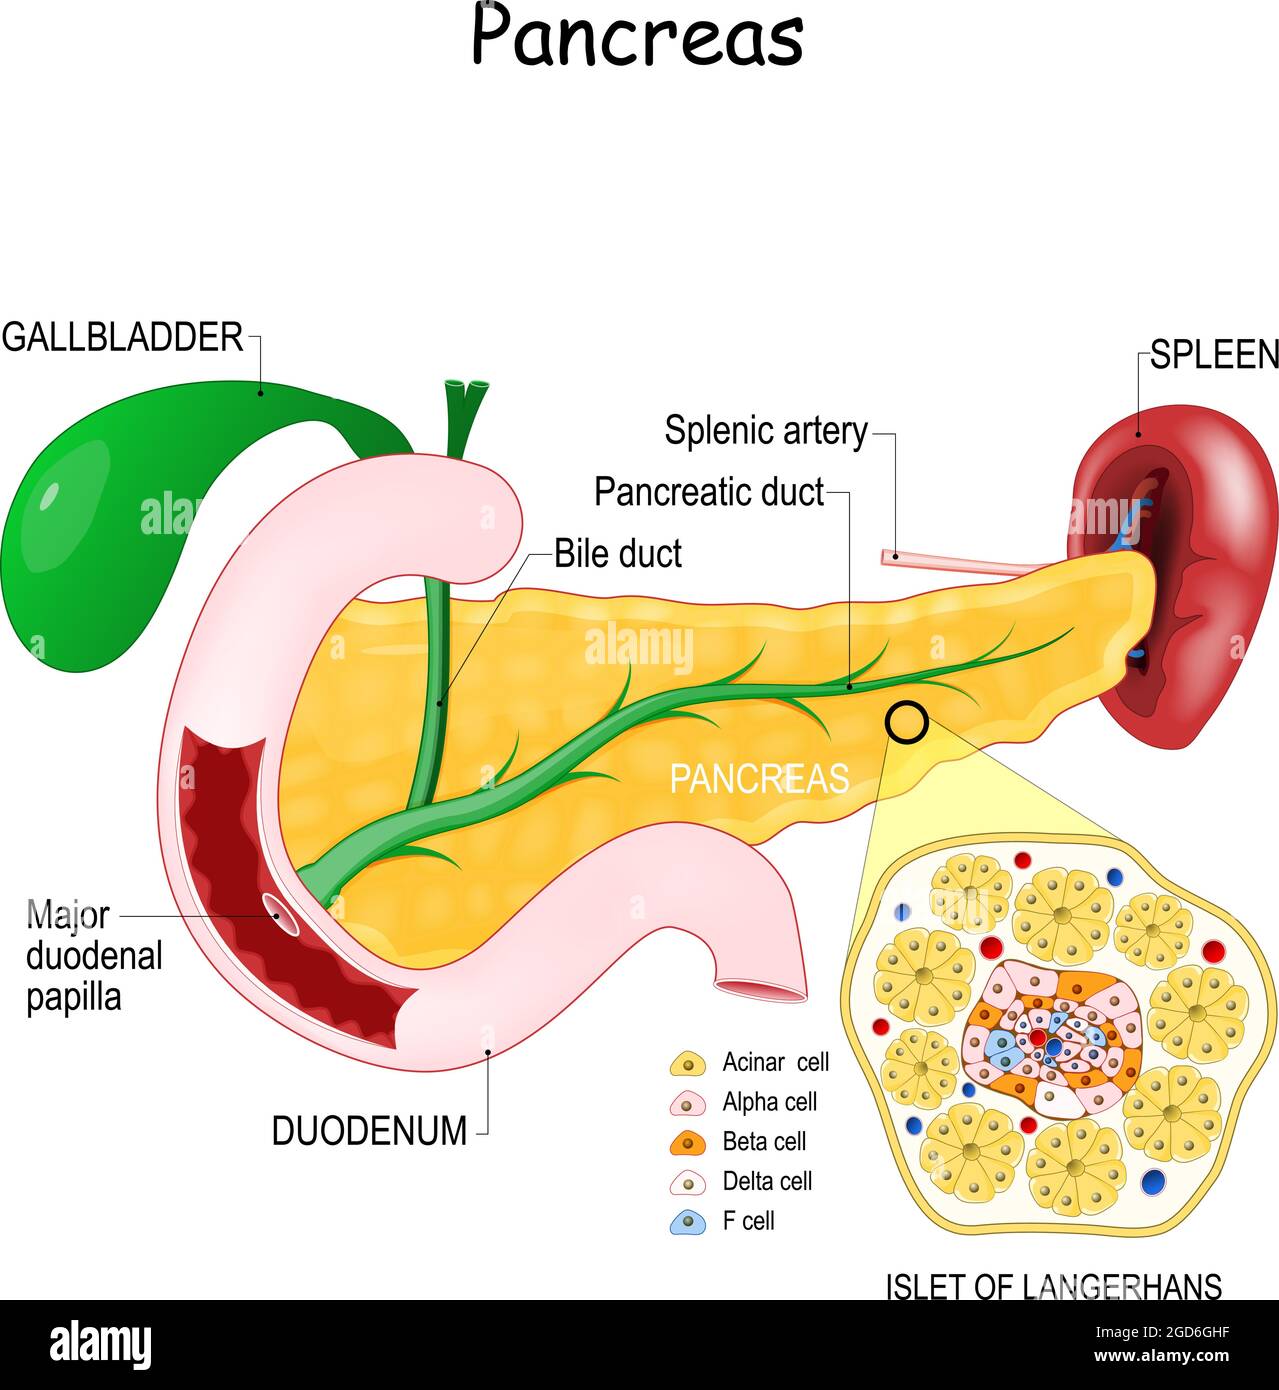 anatomia pancreas. Primo piano di struttura cellulare di isolotto langerhans. Colecisti, dotto biliare, dotto pancreatico, e papilla duodenale maggiore Illustrazione Vettoriale